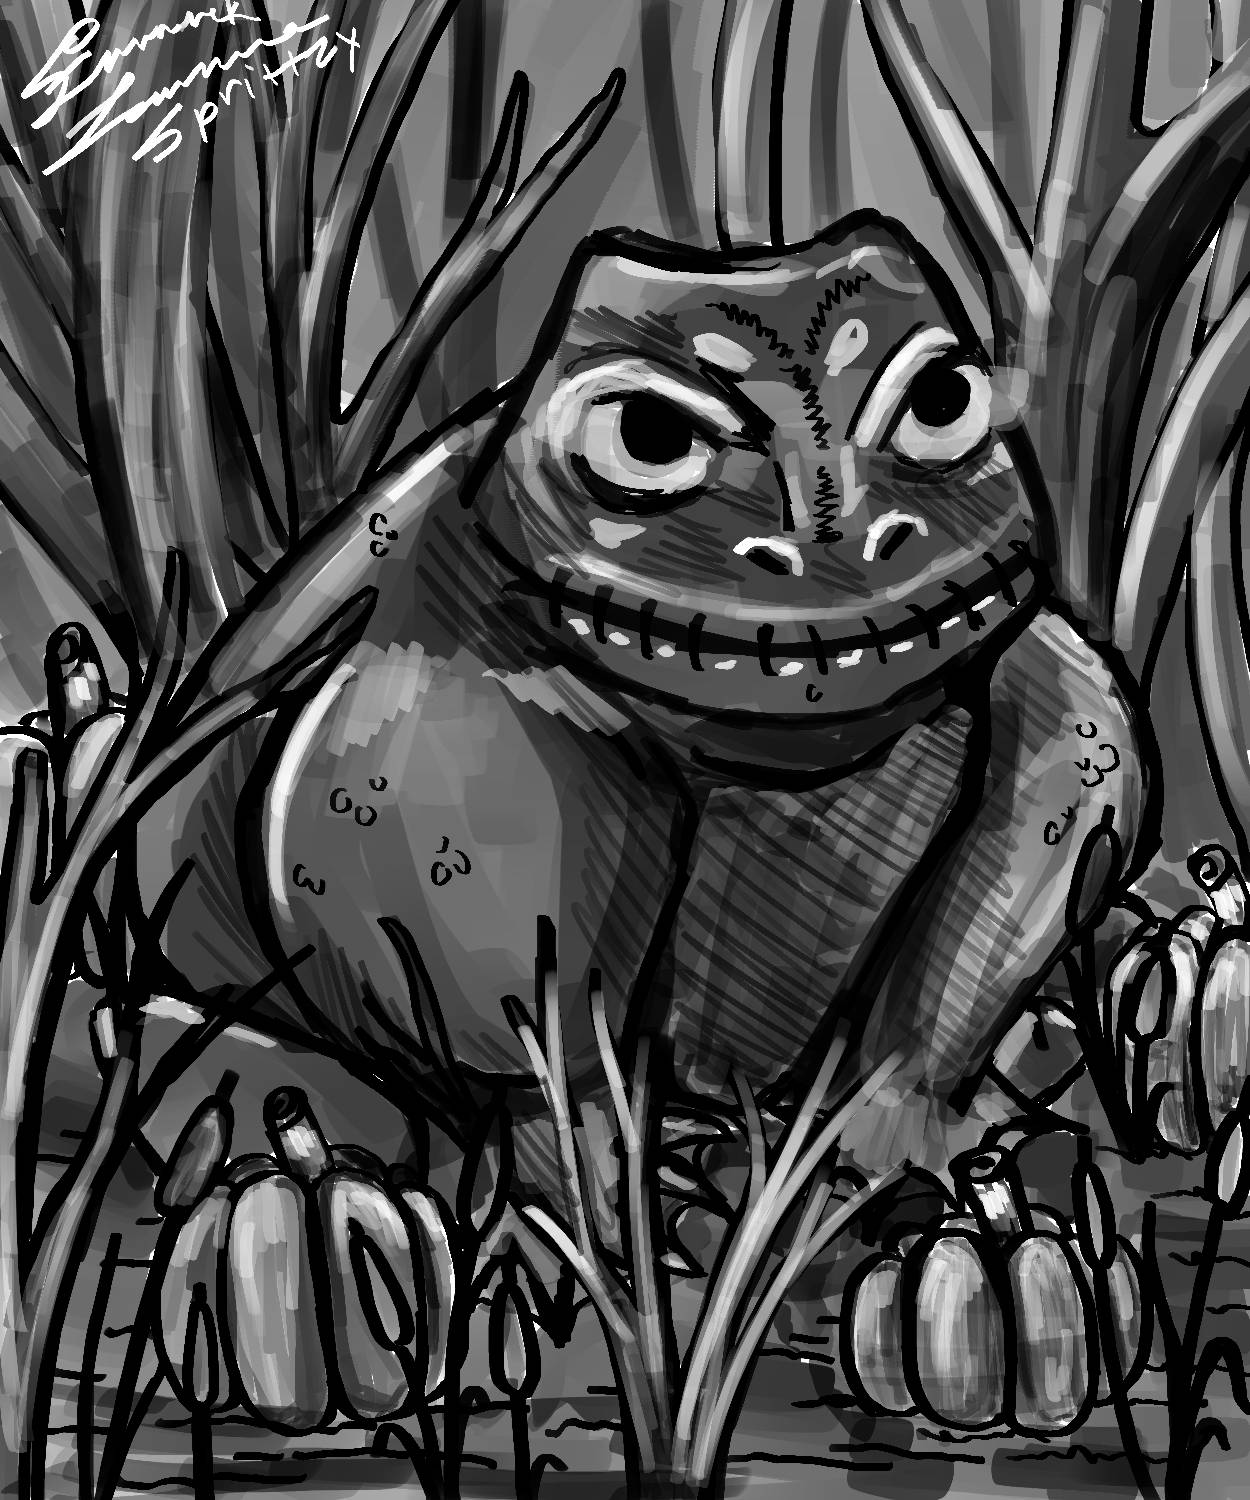 Little Frogs by Sprittzy on DeviantArt